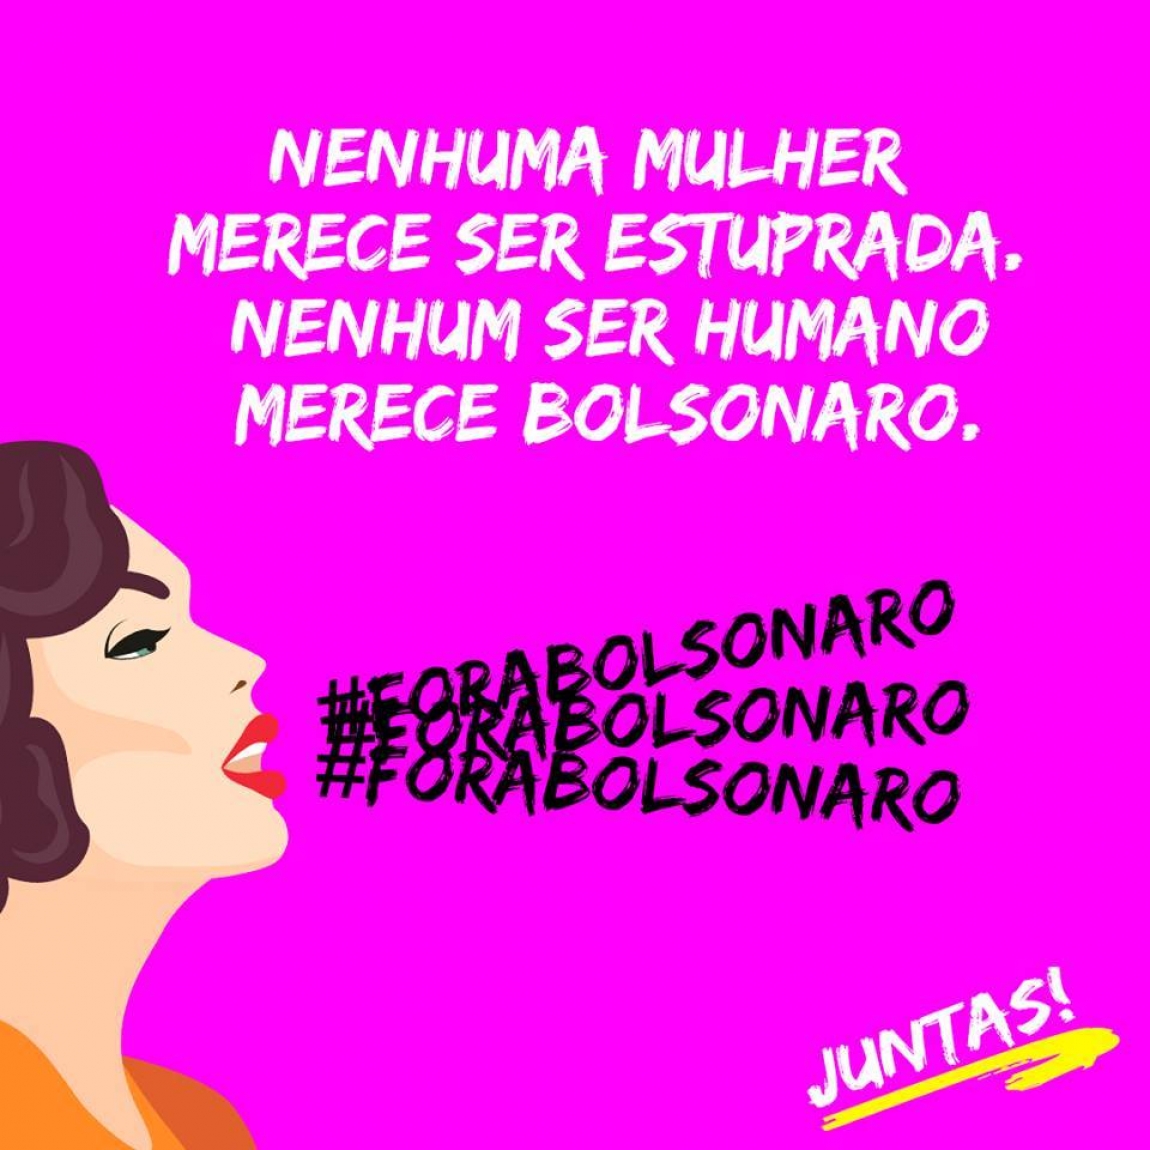 Imagem de Brasília: CUT e de movimentos de defesa das mulheres realizam ato contra Bolsonaro nesta quarta (17)